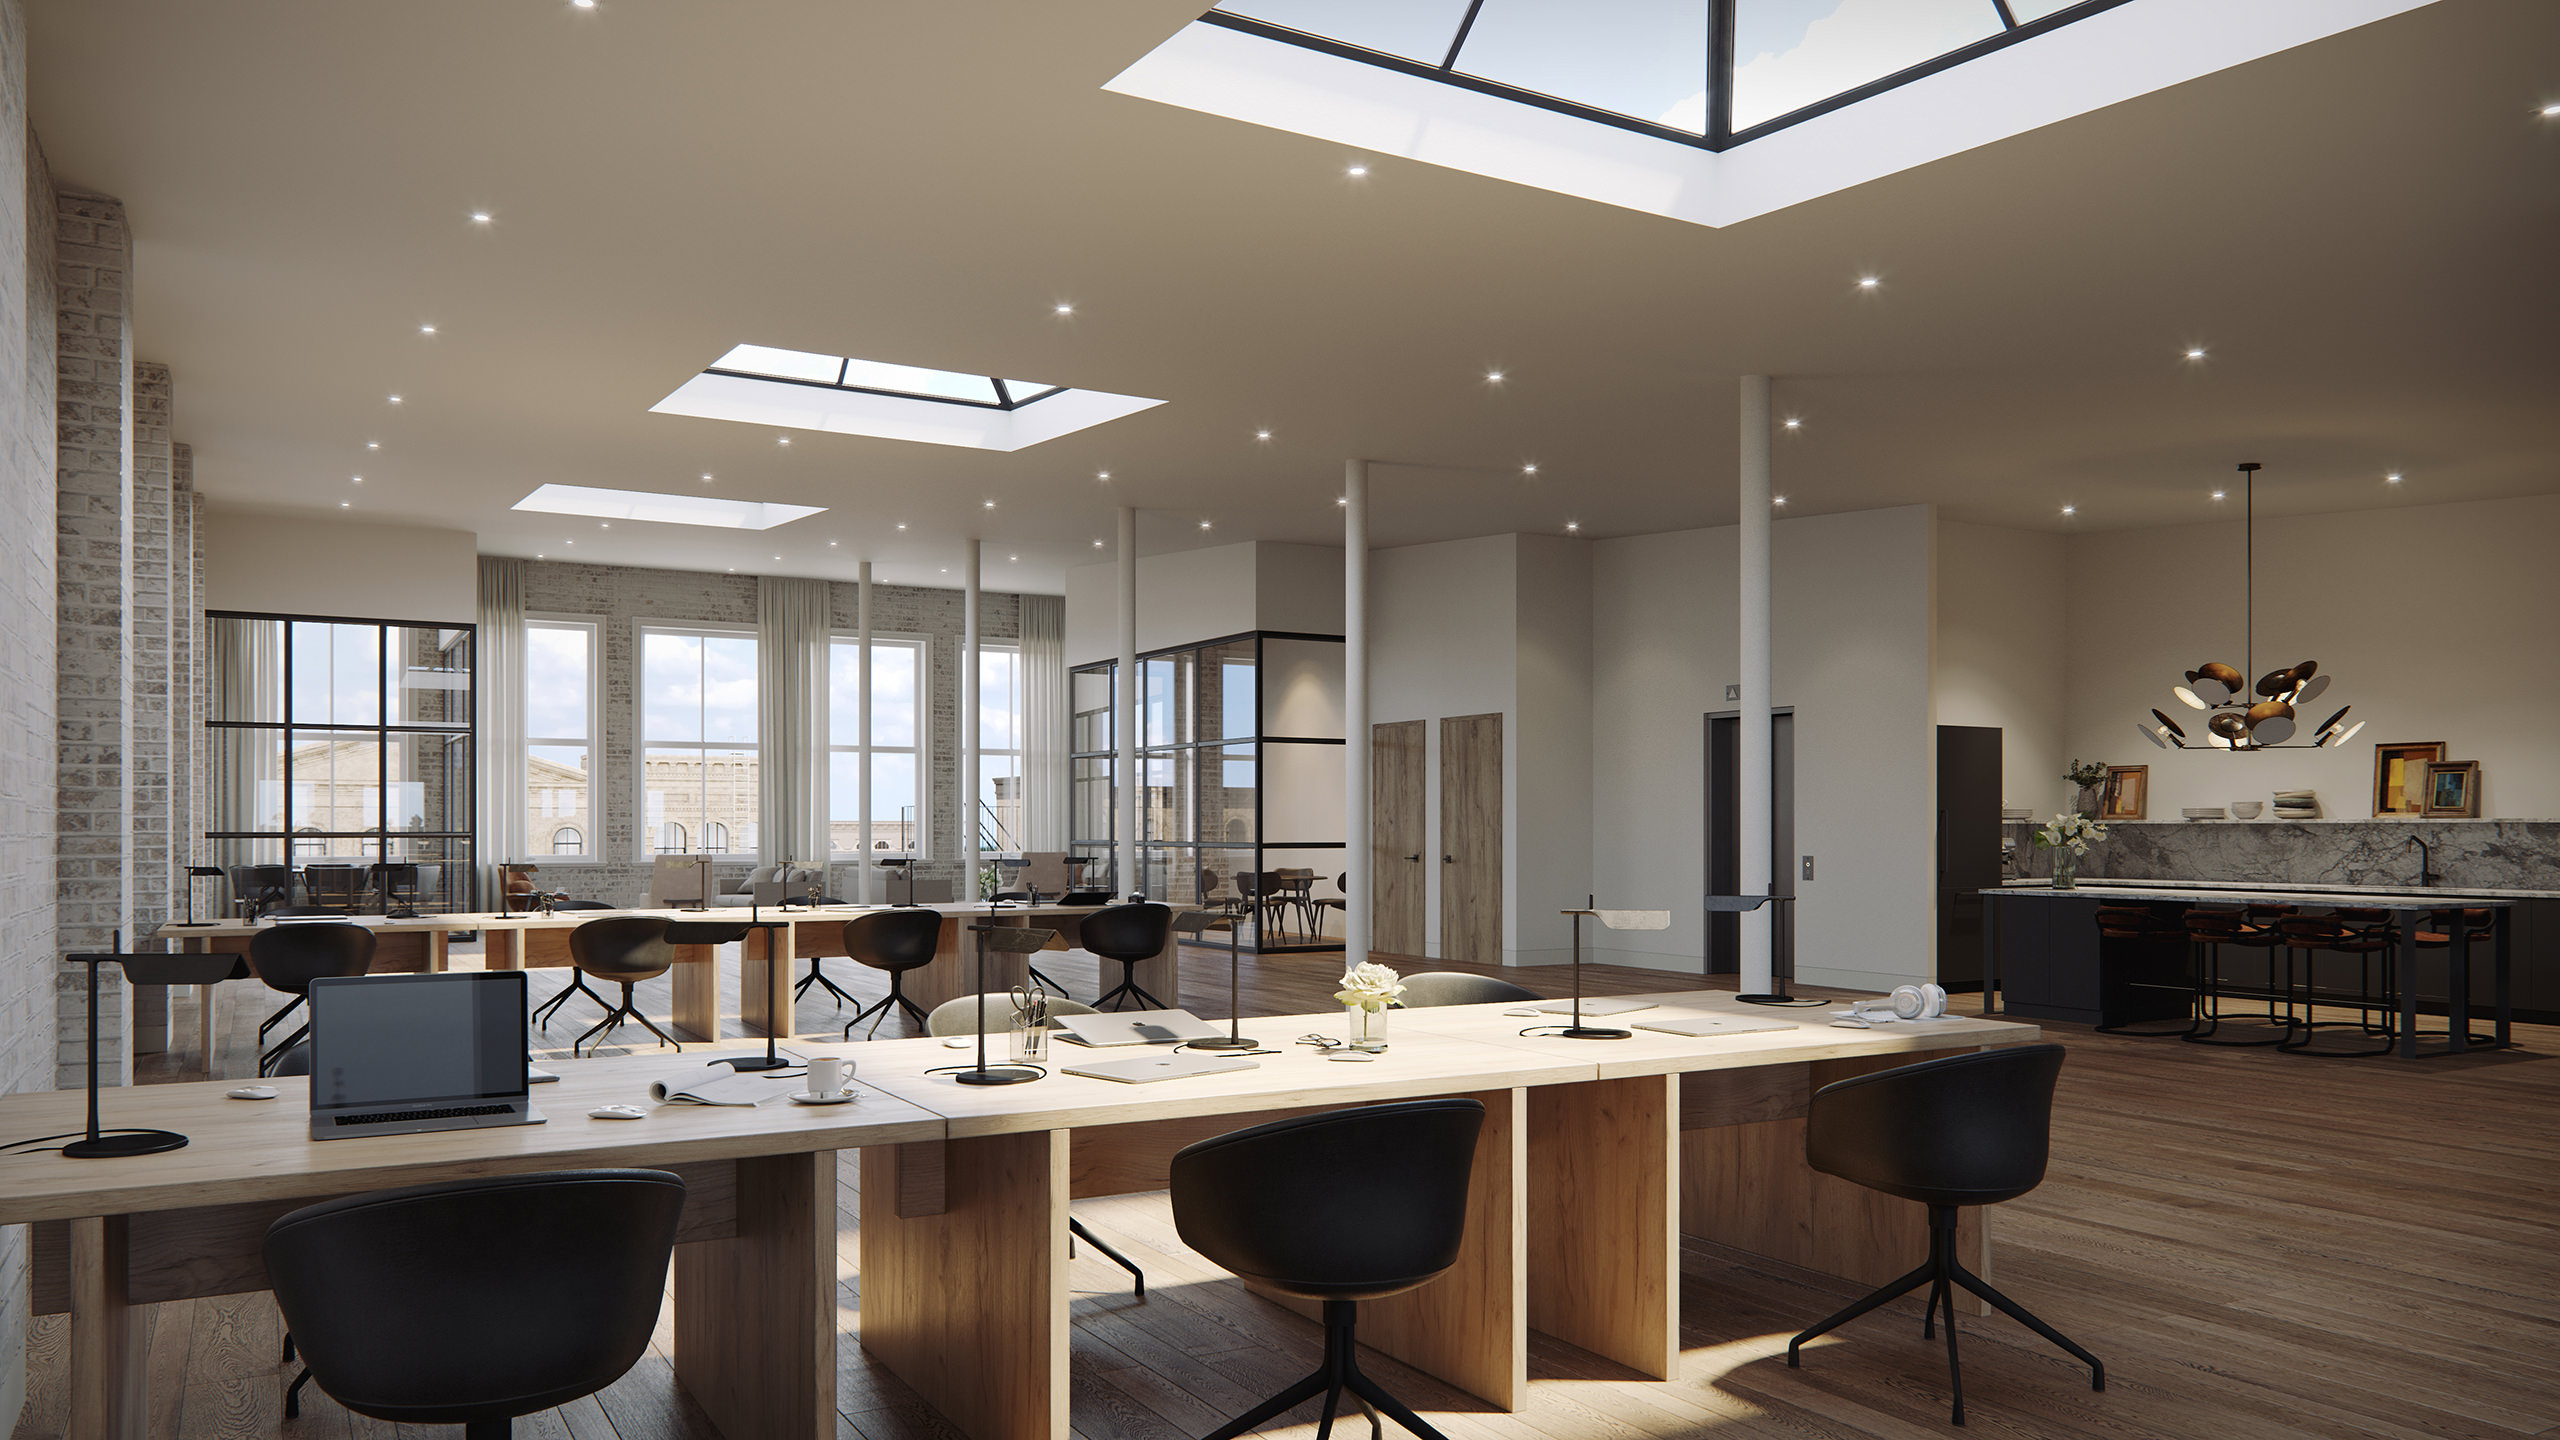 Visualisation 3D du bureau avec des ouvertures au plafond et une vue sur l'île de la cuisine